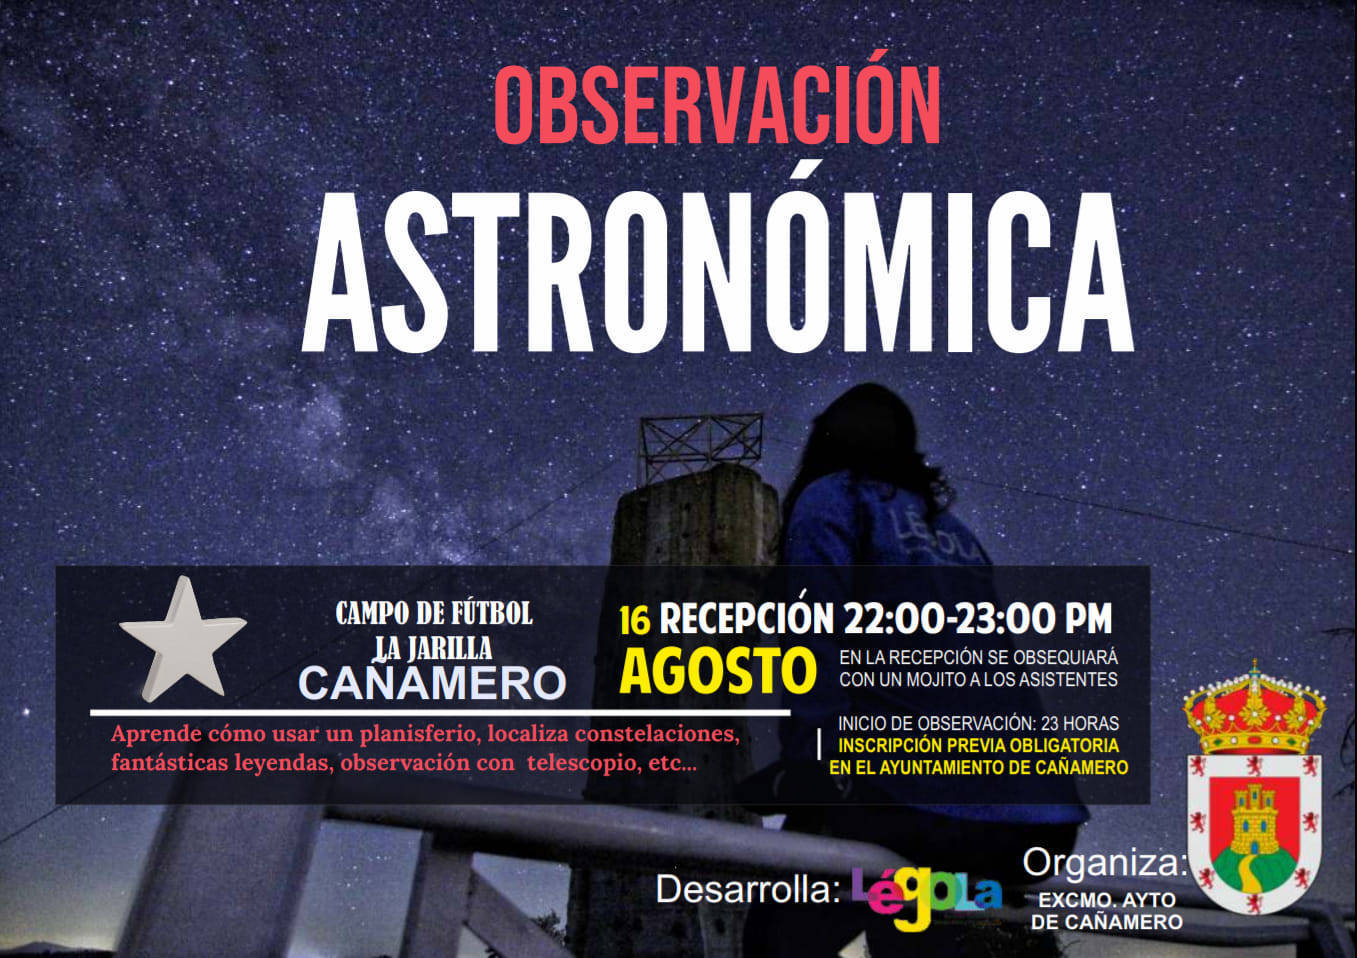 Observación astronómica (2020) - Cañamero (Cáceres)